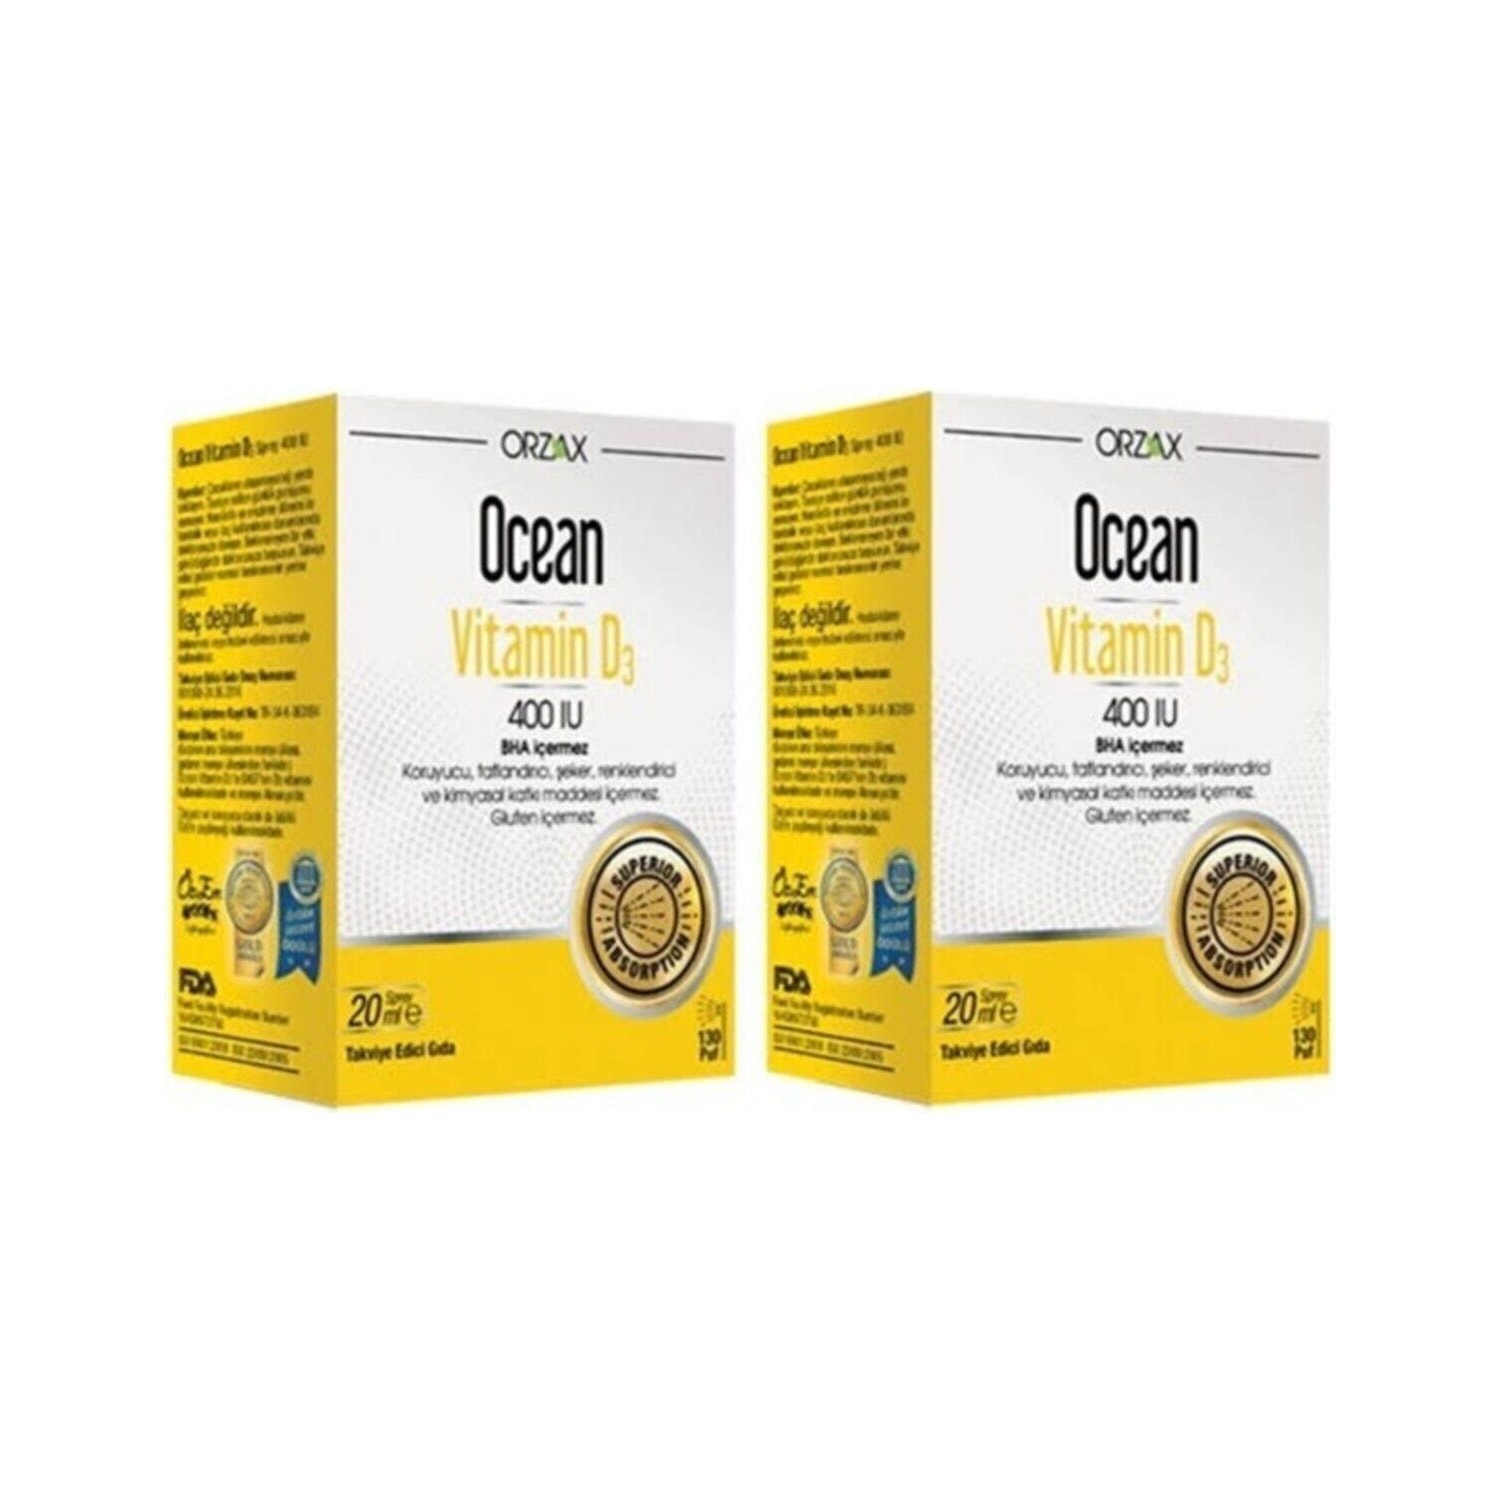 Спрей витамин D3 Ocean 400 МЕ, 2 упаковки по 20 мл цена и фото